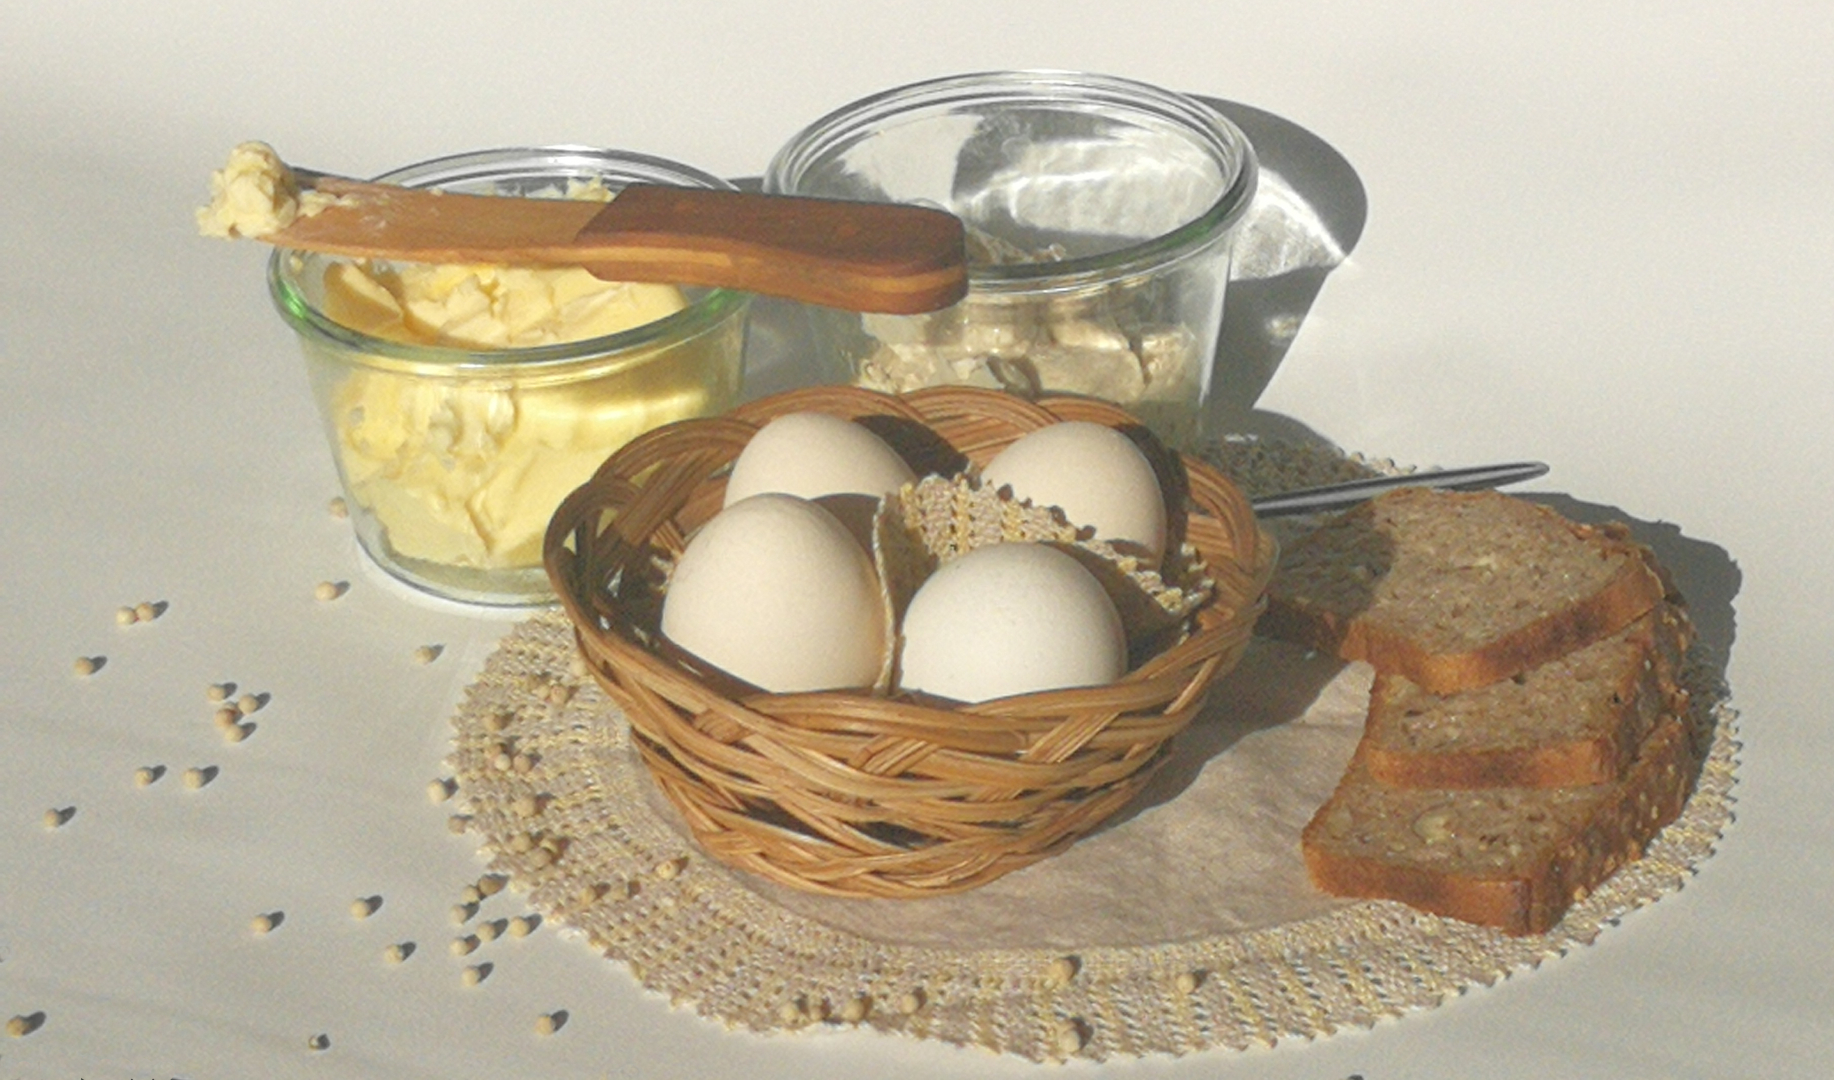 jajka w koszyku, obok masło i twarożek w szklanych słoikach, kromki chleba